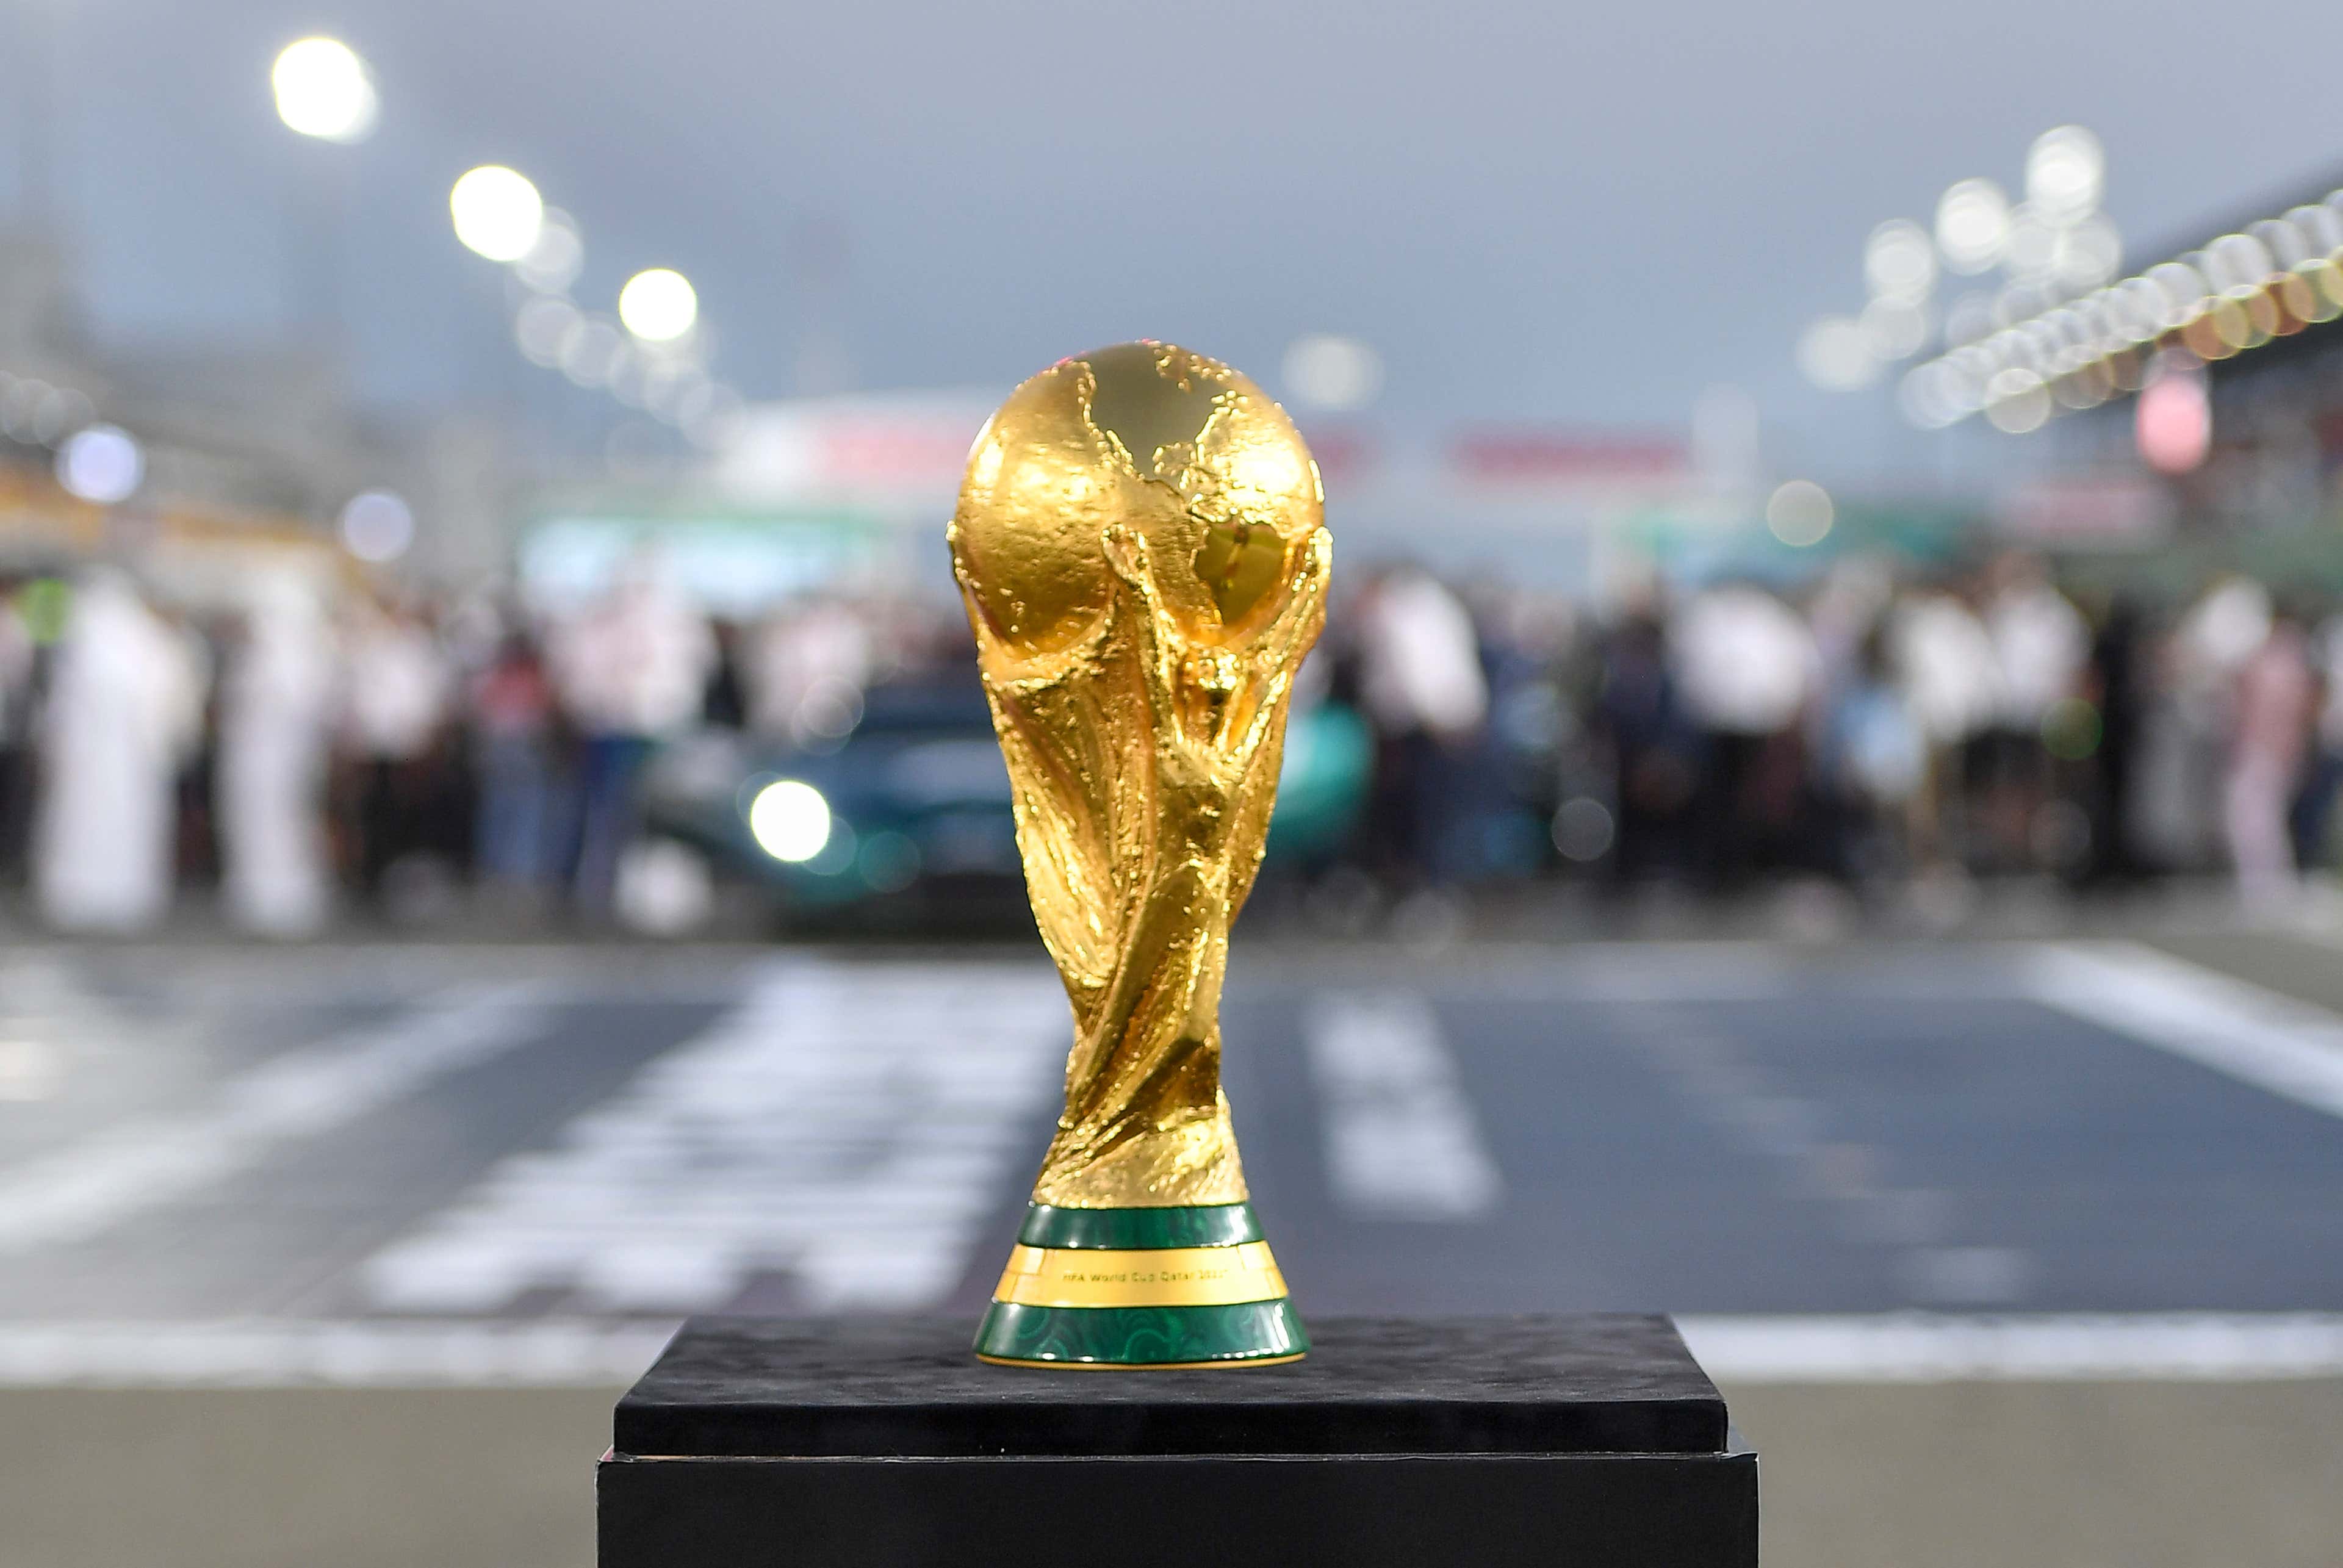 Quando começa a Copa do Mundo 2022?